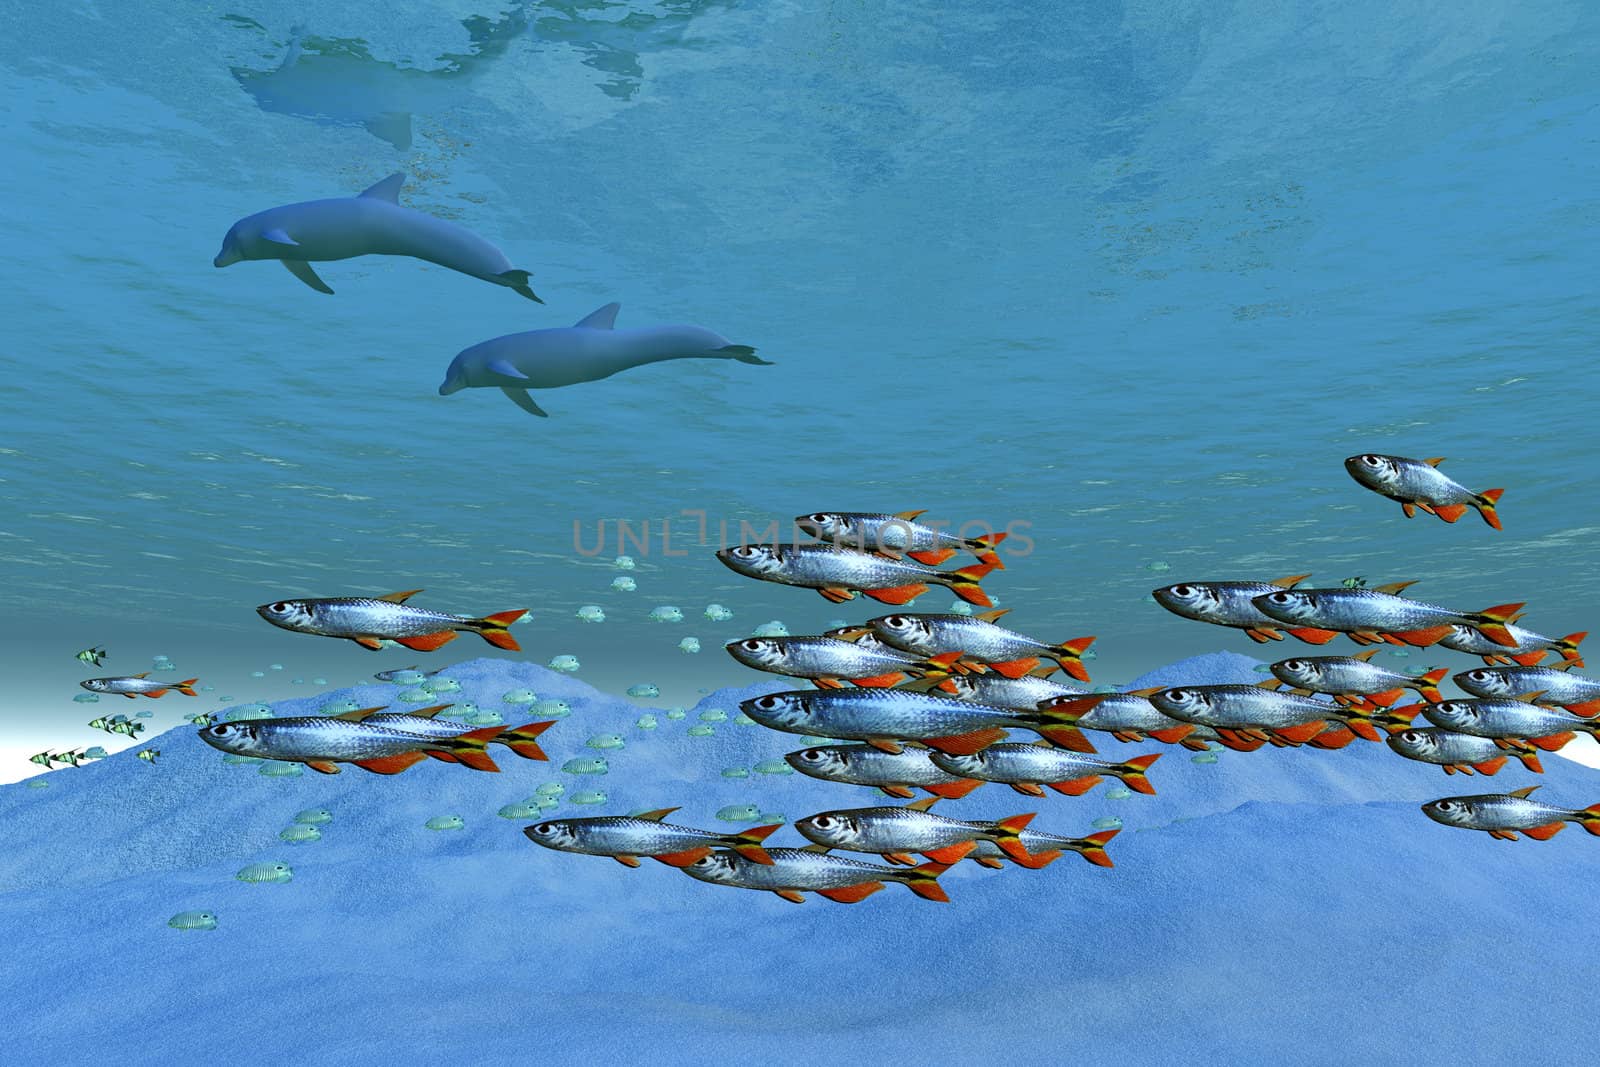 Schools of fish swim in the blue ocean.